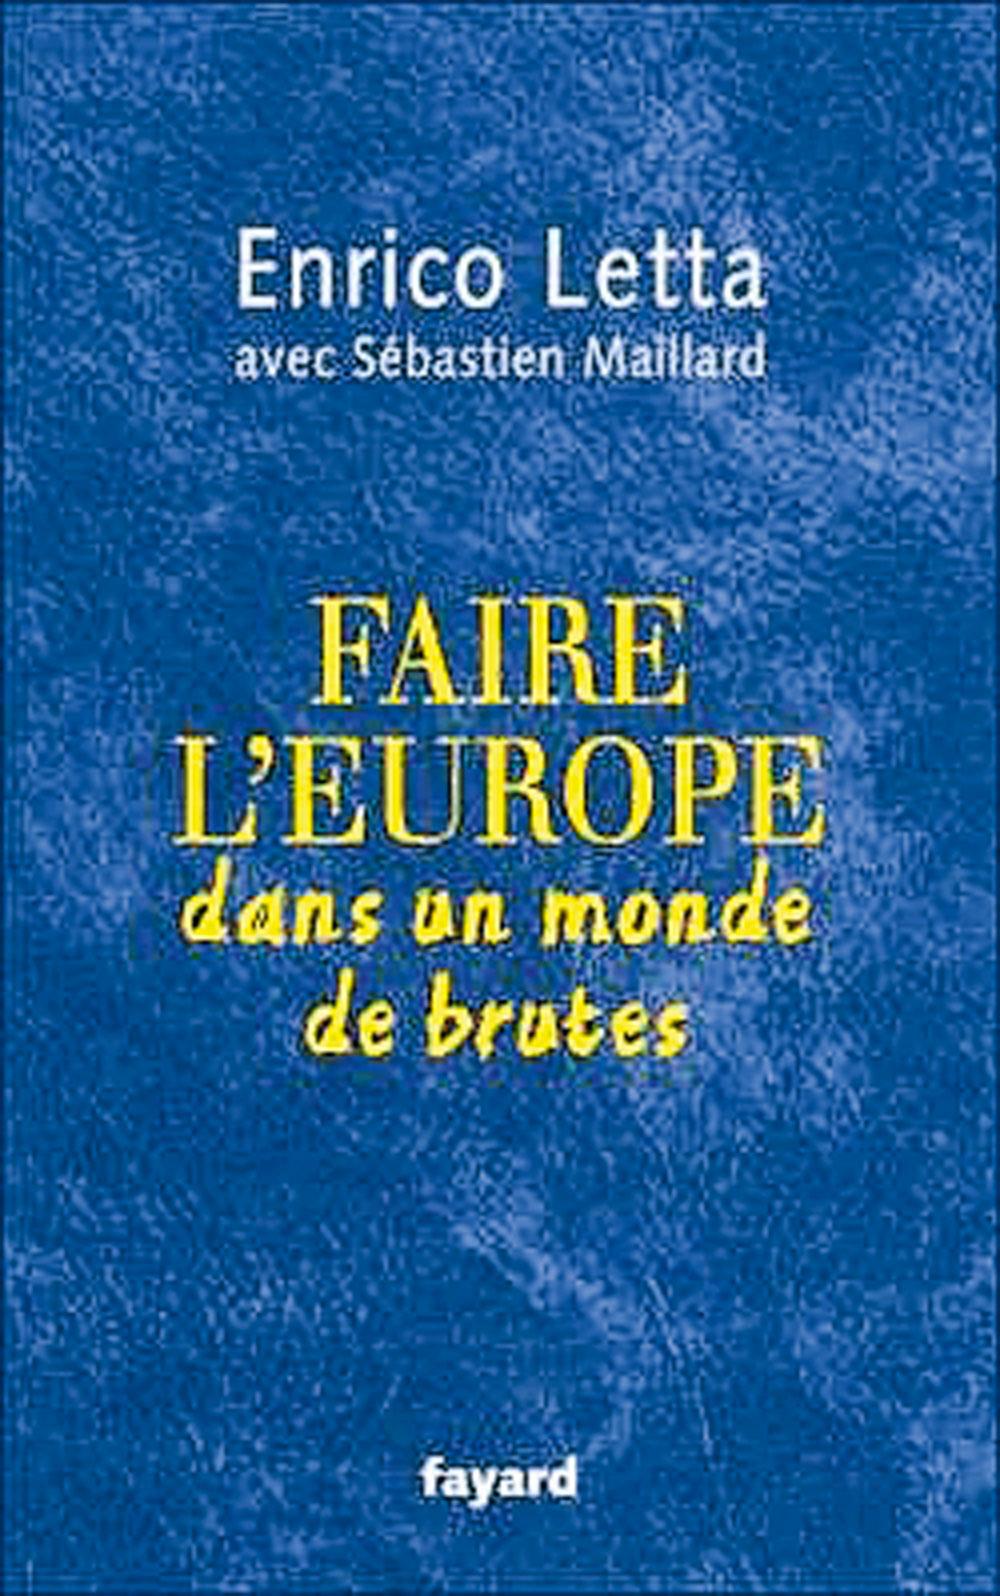 (1) Faire l'Europe dans un monde de brutes, par Enrico Letta avec Sébastien Maillard, Fayard, 208 p.